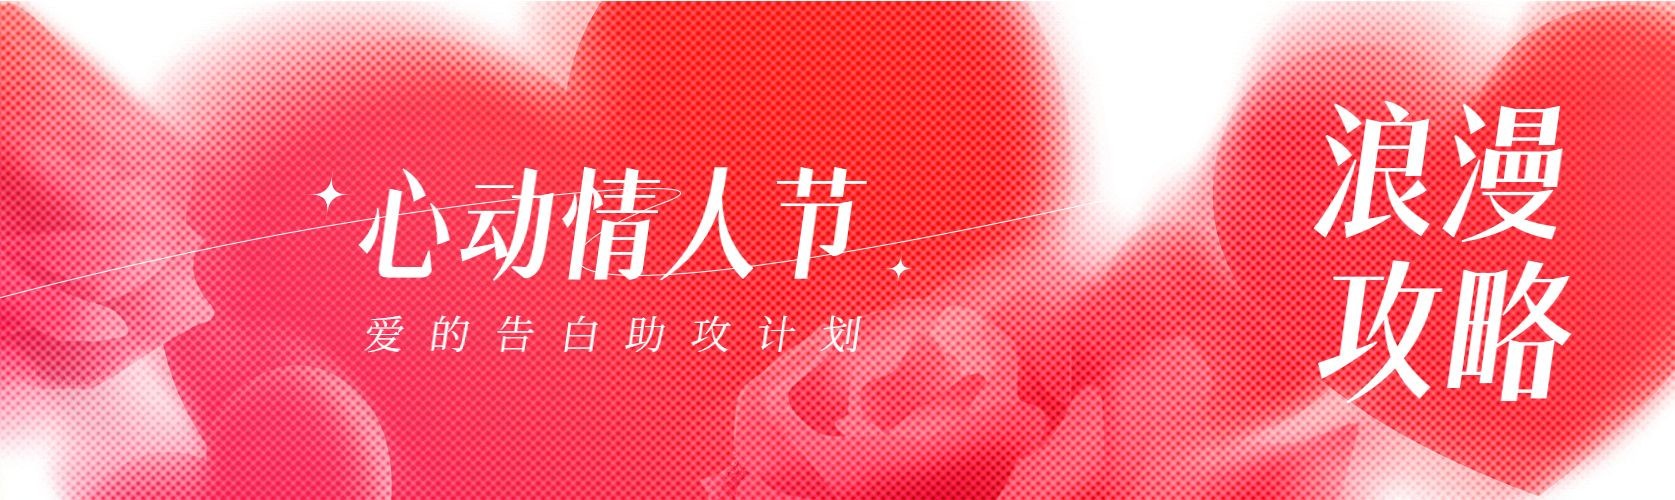 情人节节日祝福半调网格公众号首次图